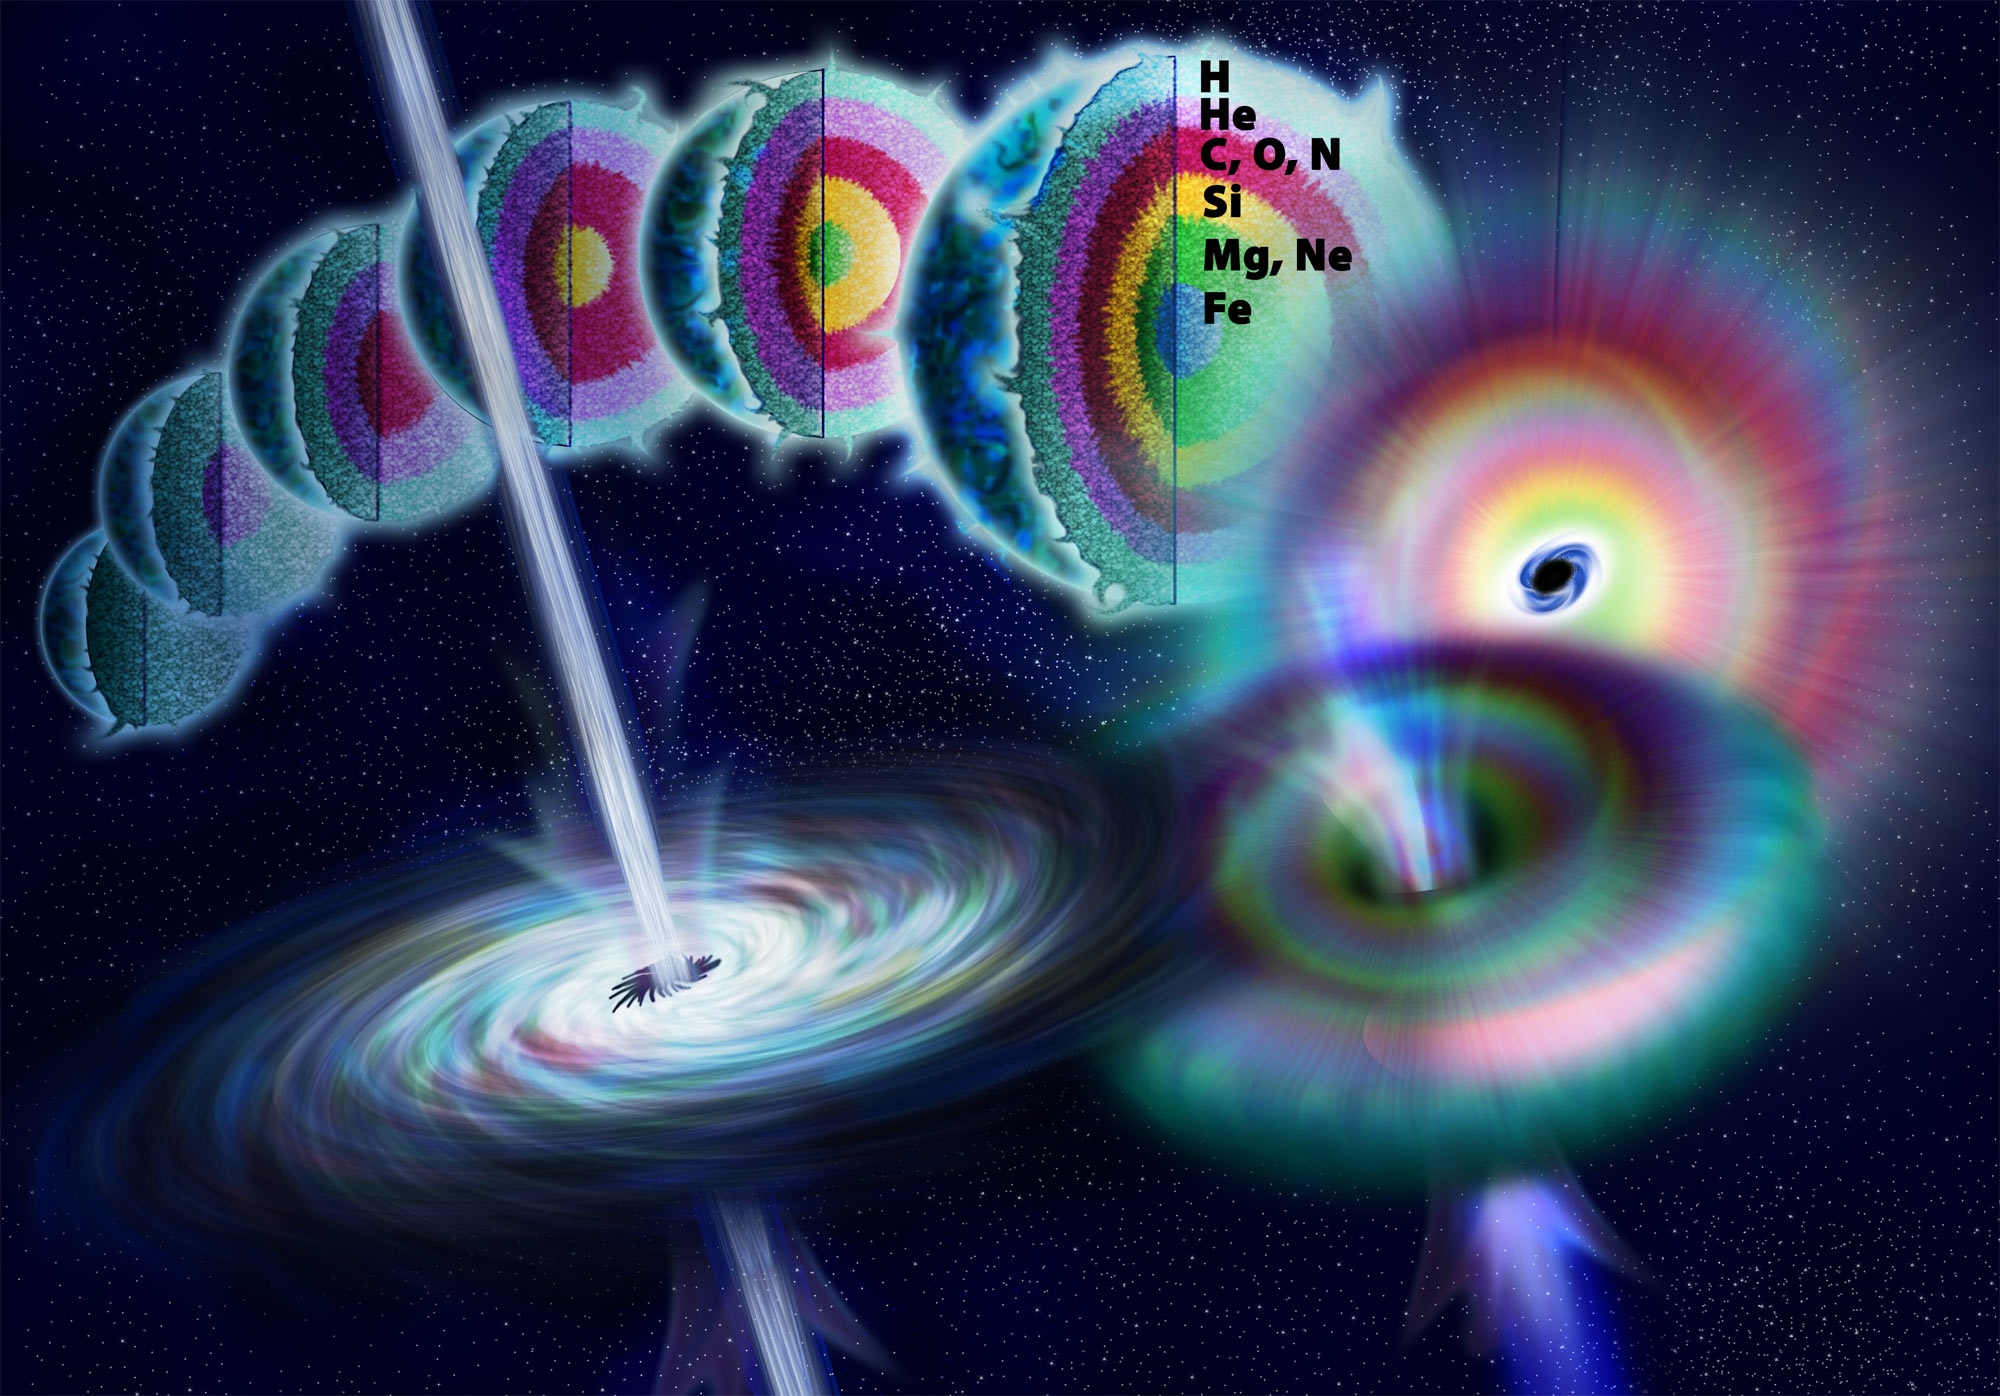 Hipernowa. Wizja artystyczna pokazująca życie gwiazdy masywnej. W wyniku reakcji syntezy jądrowej z pierwiastków o mniejszych masach atomowych powstają cięższe. Gdy reakcje syntezy jądrowej nie są w stanie zapewnić wystarczającego ciśnienia, aby zrównoważyć siłę grawitacji - następuje w ułamku sekundy kolaps jądra masywnej gwiazdy i powstanie czarnej dziury. Teoretycznie pewna część energii uwolnionej podczas tego kolapsu może być uwolniona wzdłuż osi obrotu w postaci dżetu, który jest źródłem rozbłysku promieniowania gamma trwającego od milisekund do minut. Szacuje się, że gdyby po wybuchu supernowej znajdującej się w odległości kilku tysięcy lat świetlnych, taki dżet trafił w Ziemię, to mógłby zniszczyć biosferę (zniszczenie połowy ozonosfery, wytworzenie dwutlenku azotu NO2) i potencjalnie powodując masową zagładę. Źródło: National Science Foundation